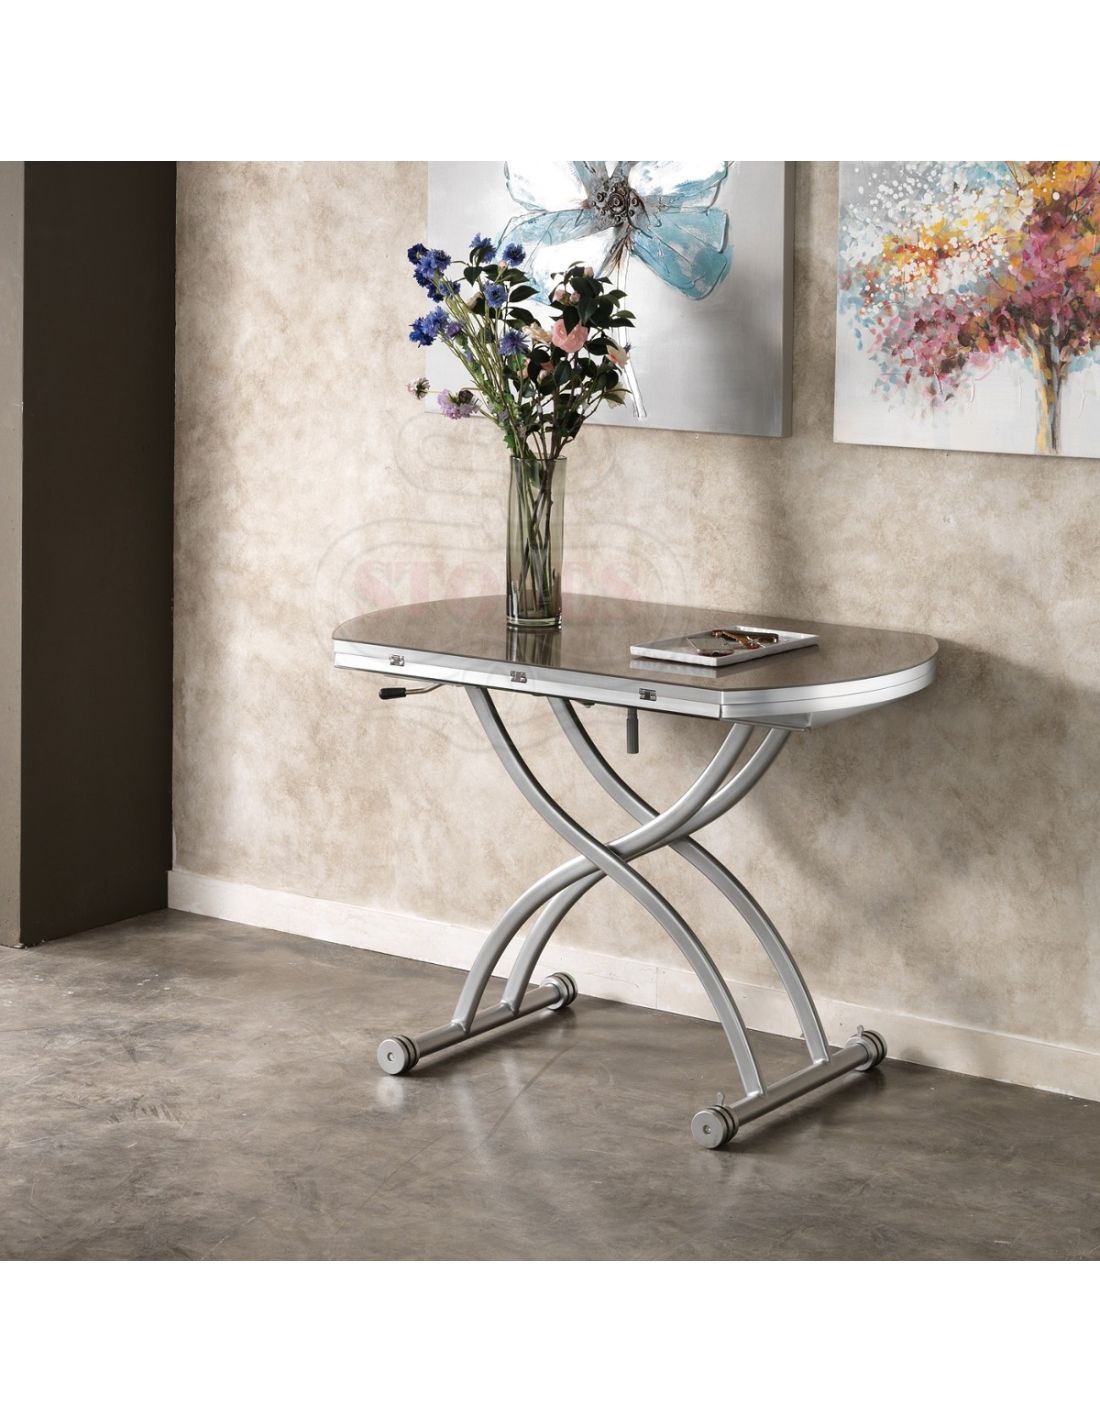 Gateway tavolino da salotto allungabile e alzabile 105 cm for Tavolini da salotto allungabili